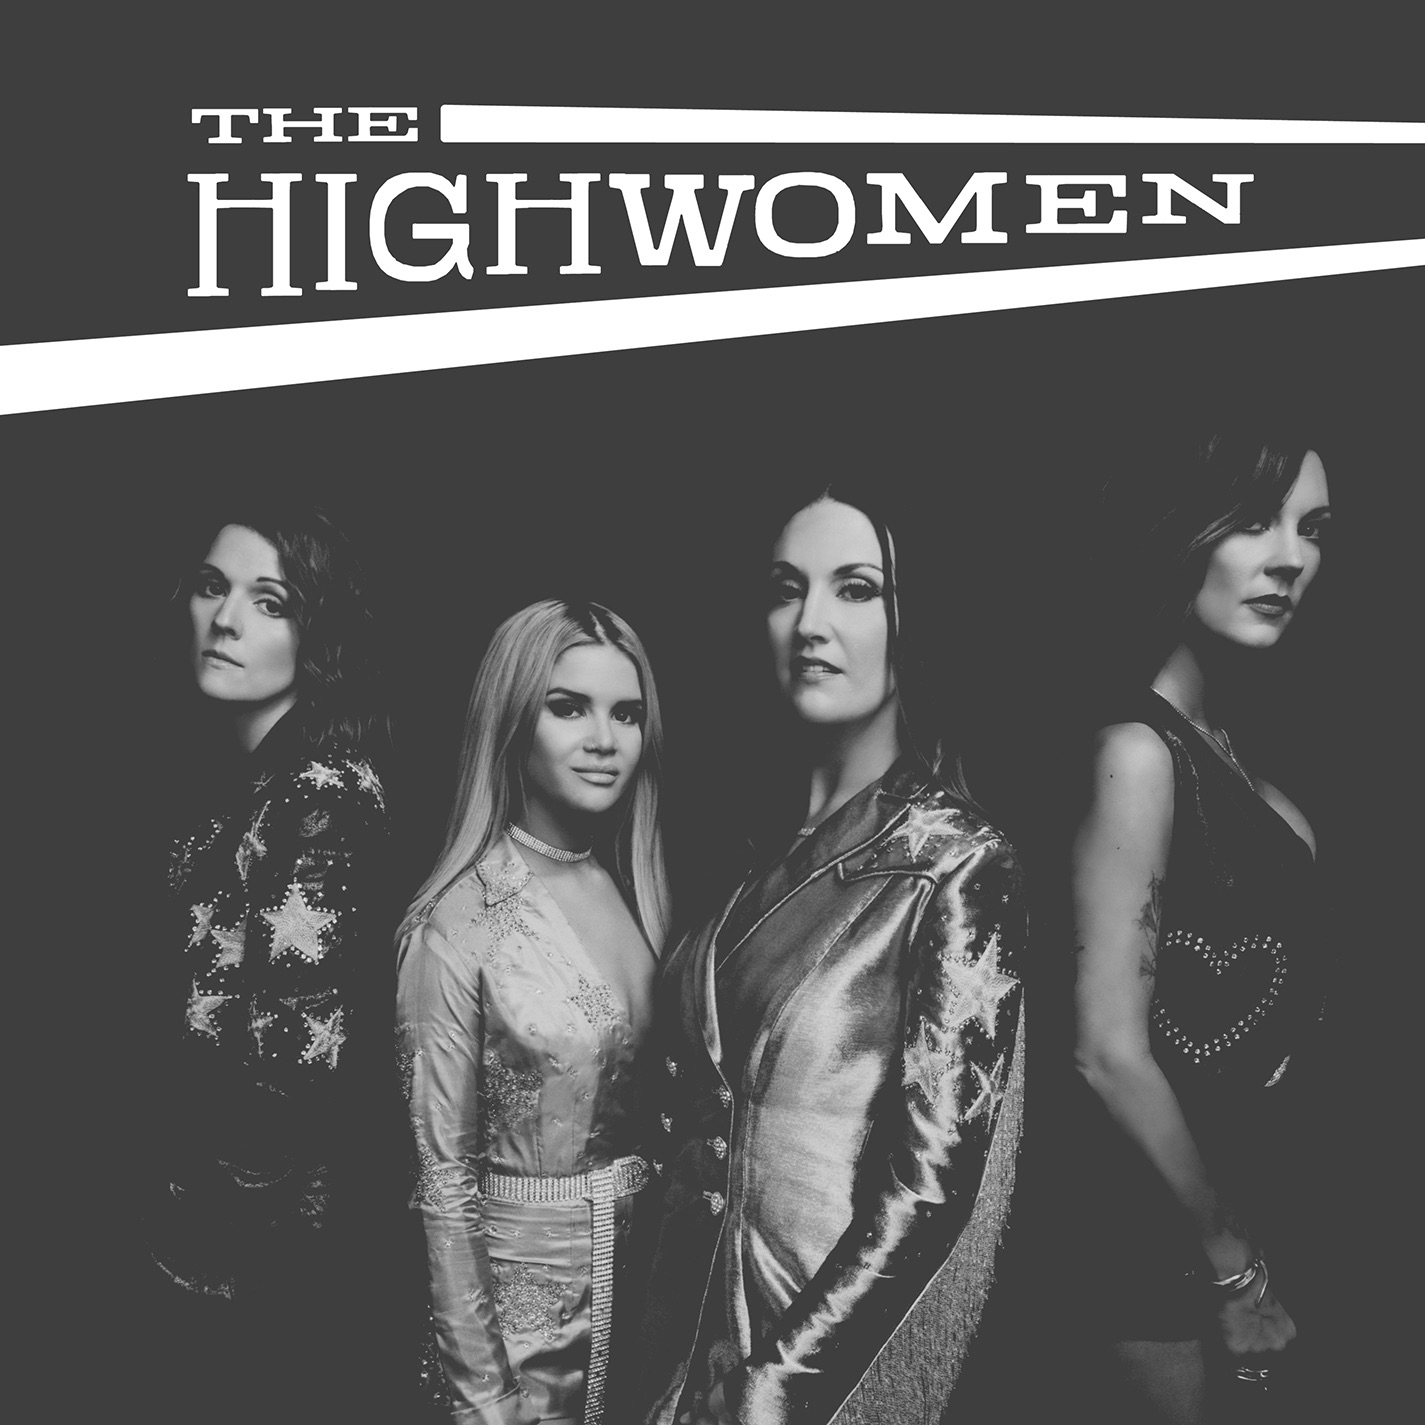 Album Art for "The Highwomen" by The Highwomen